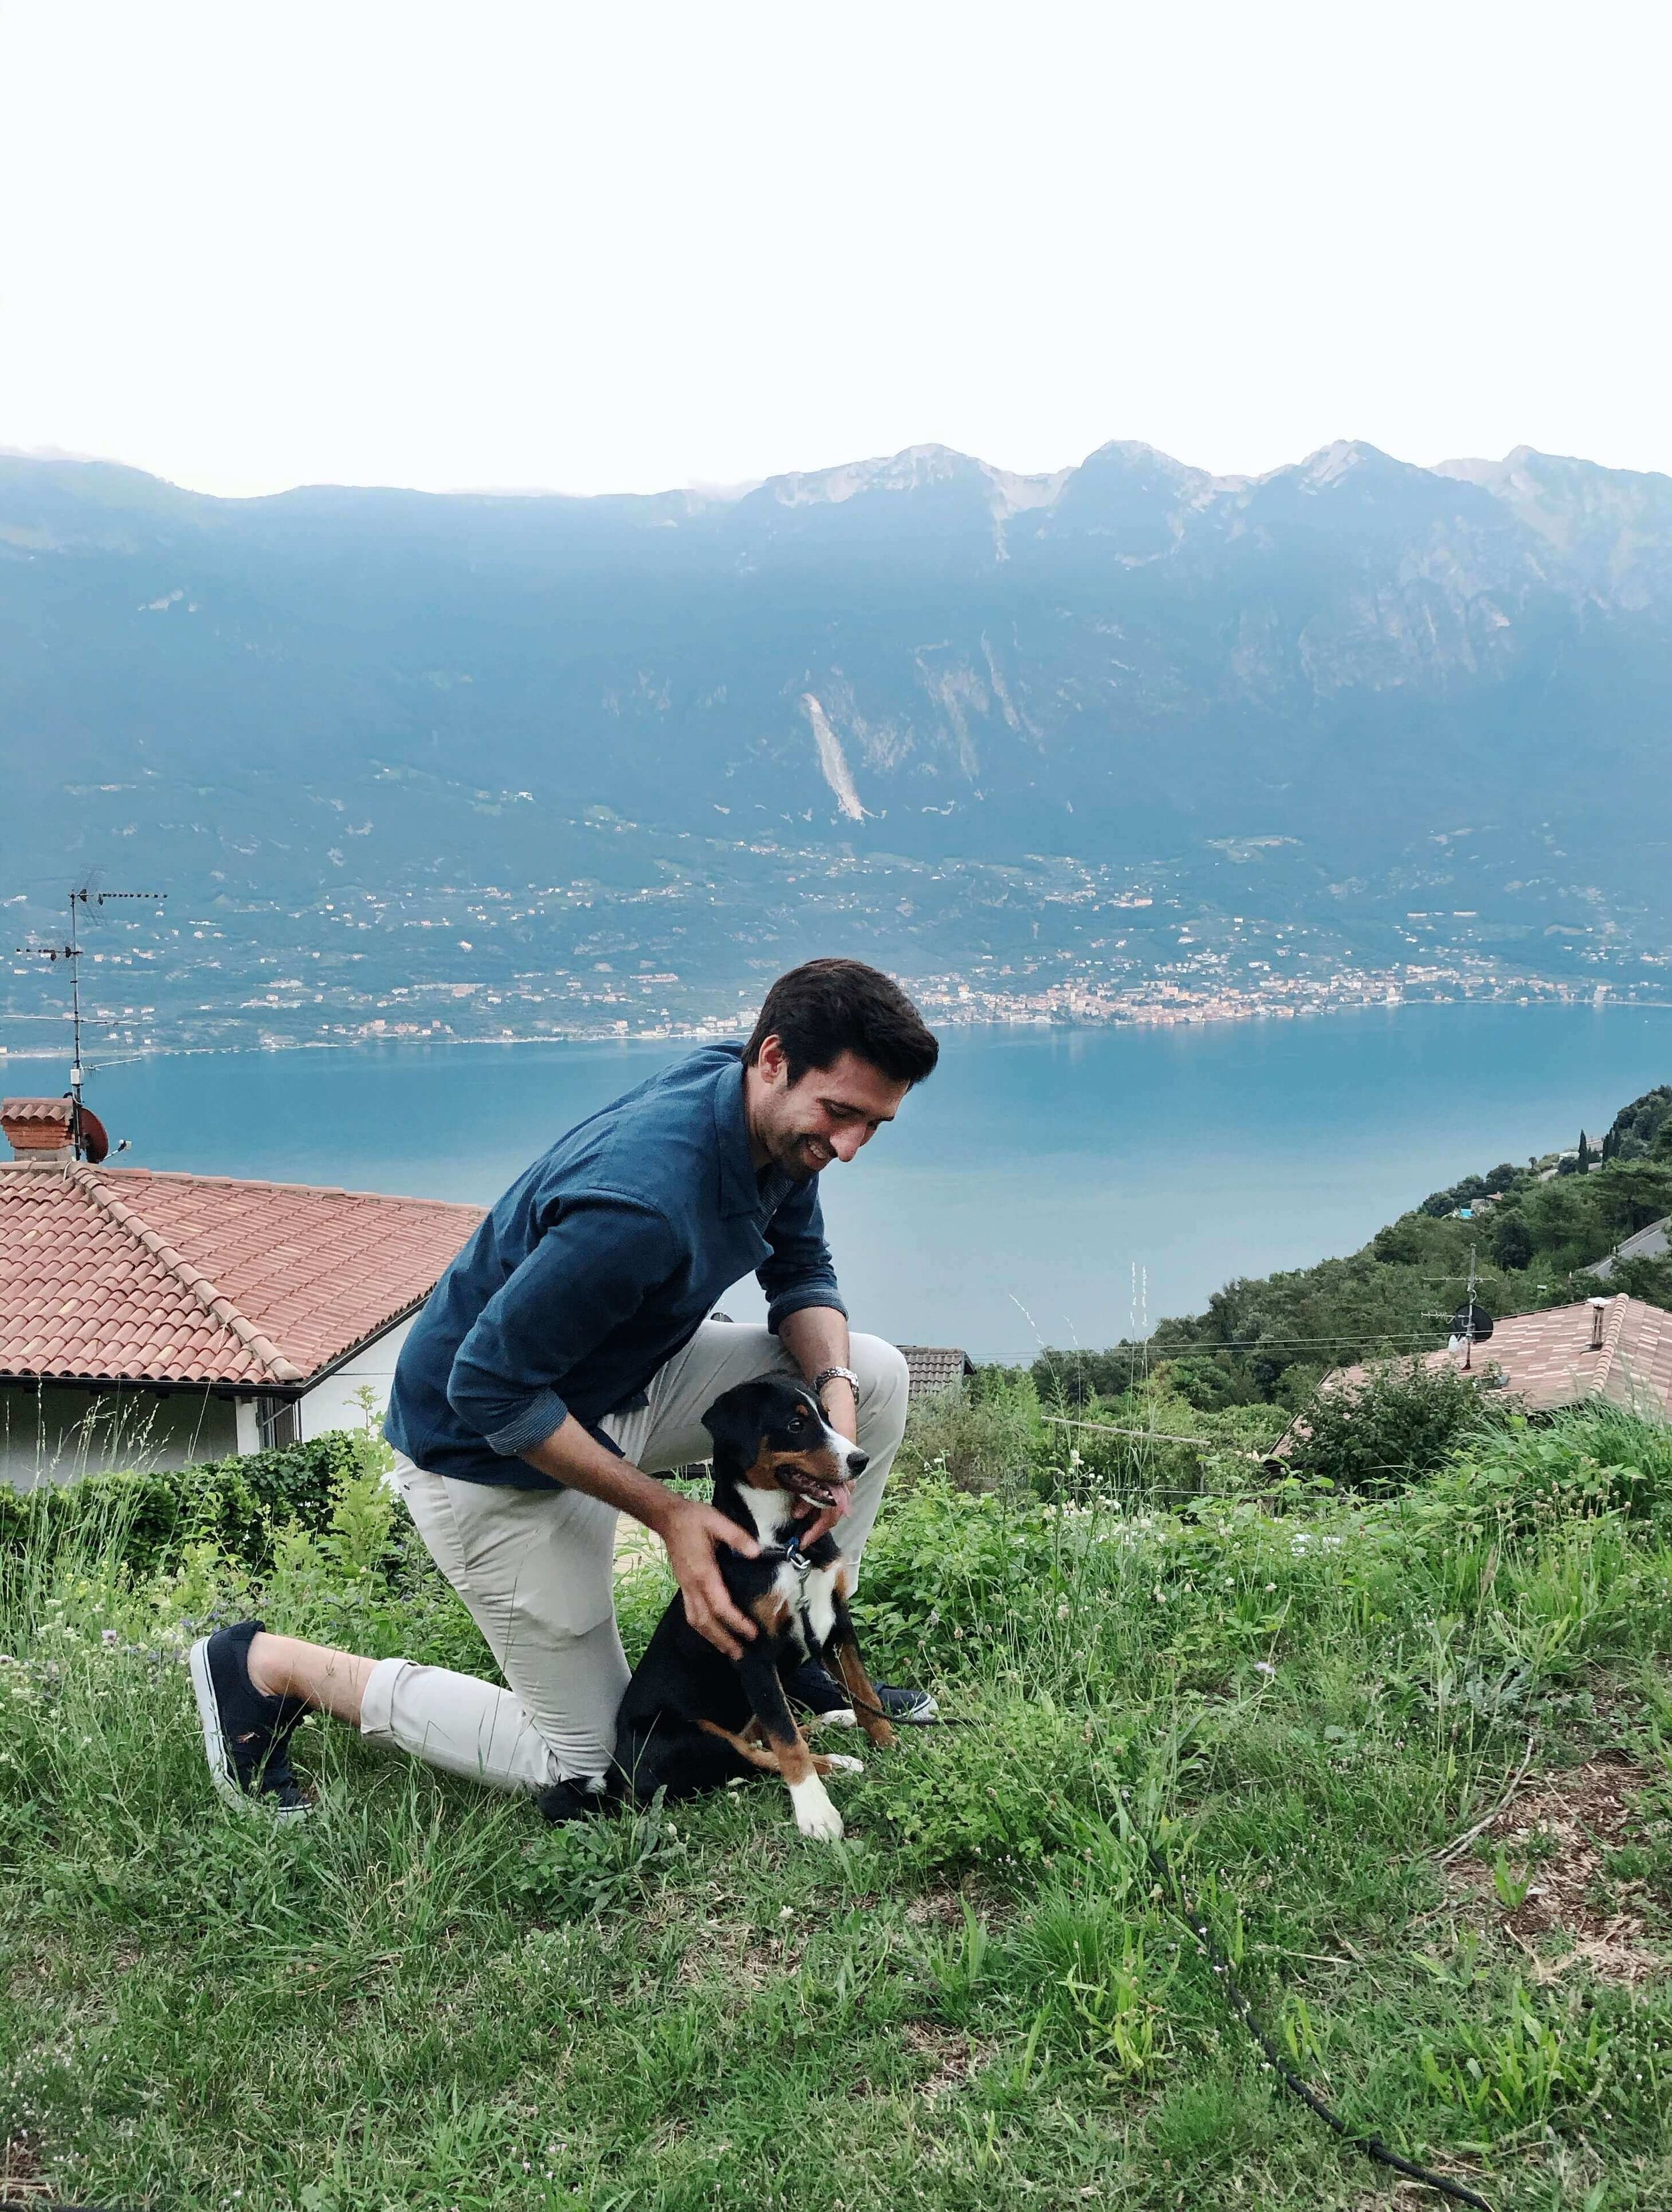 Me and my vegan puppy enjoying the view at Lake Garda, Italy